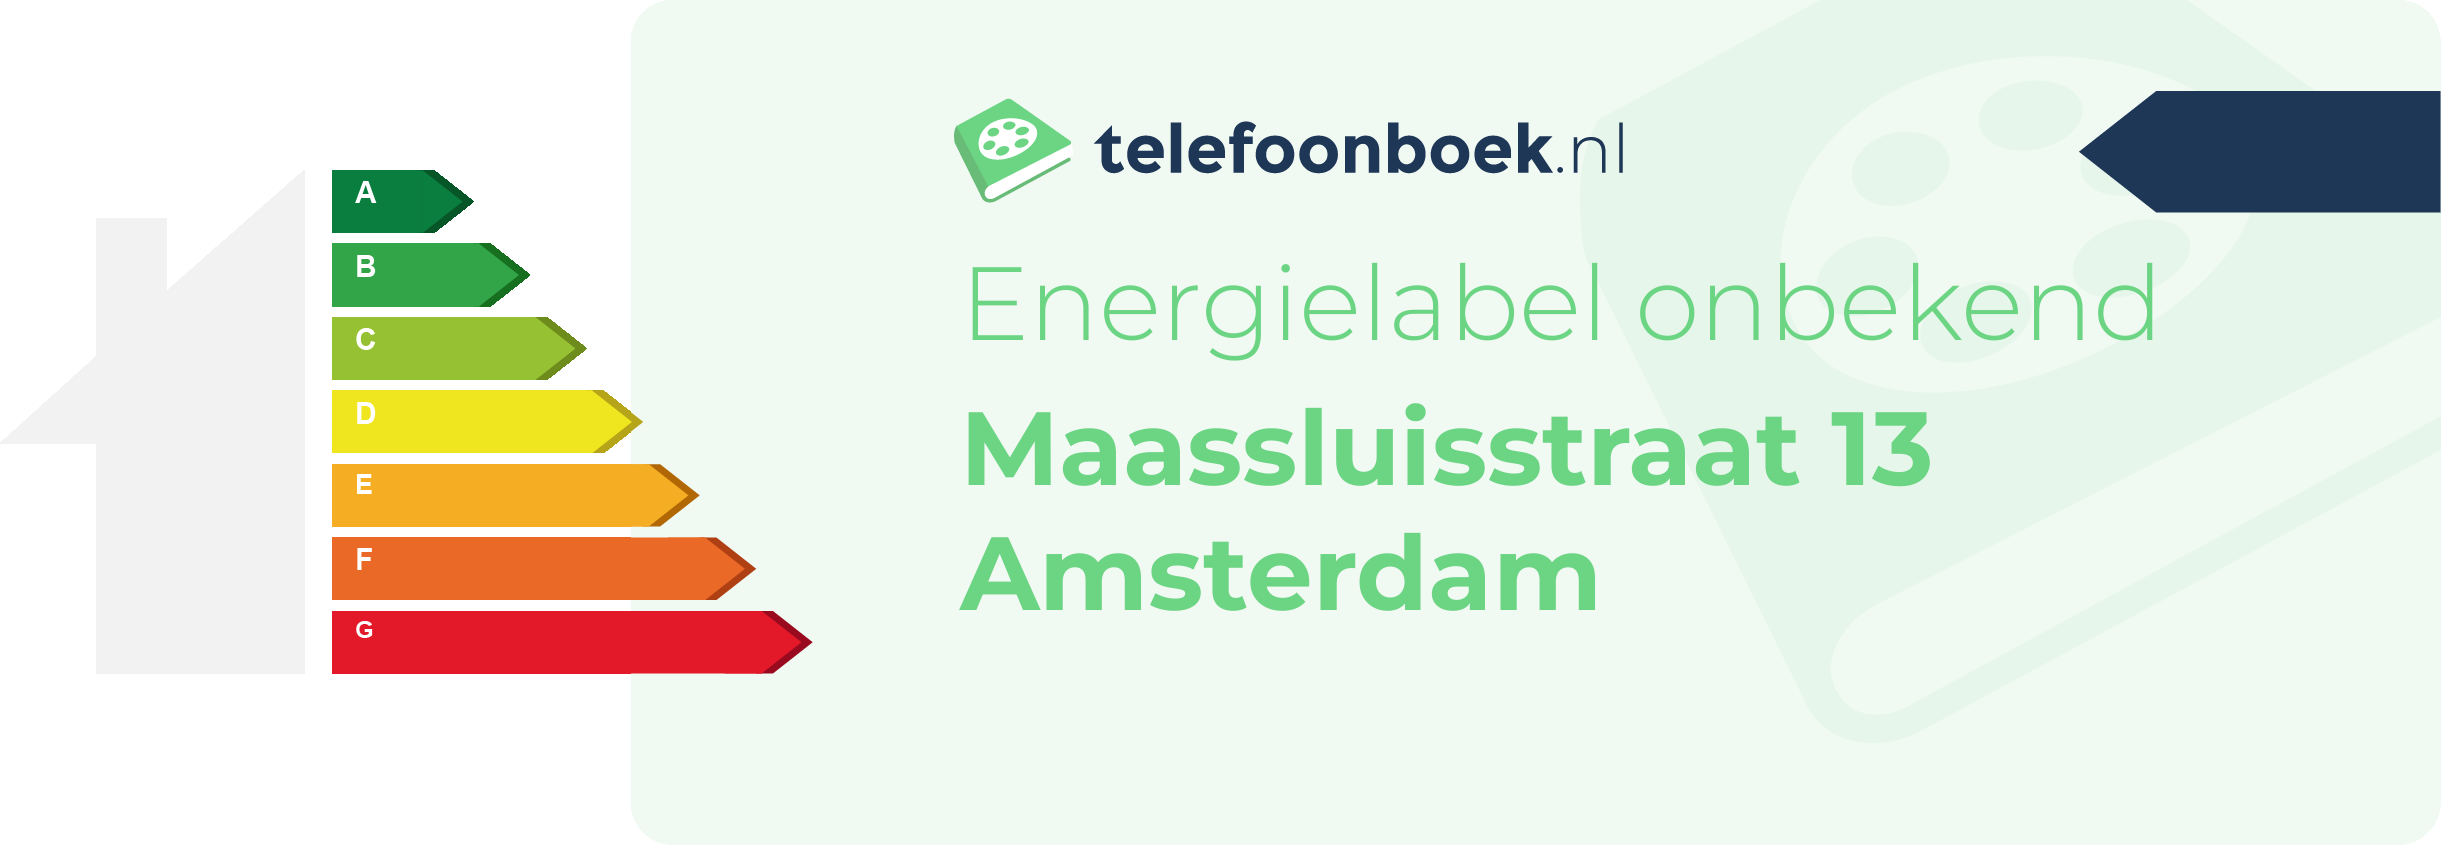 Energielabel Maassluisstraat 13 Amsterdam